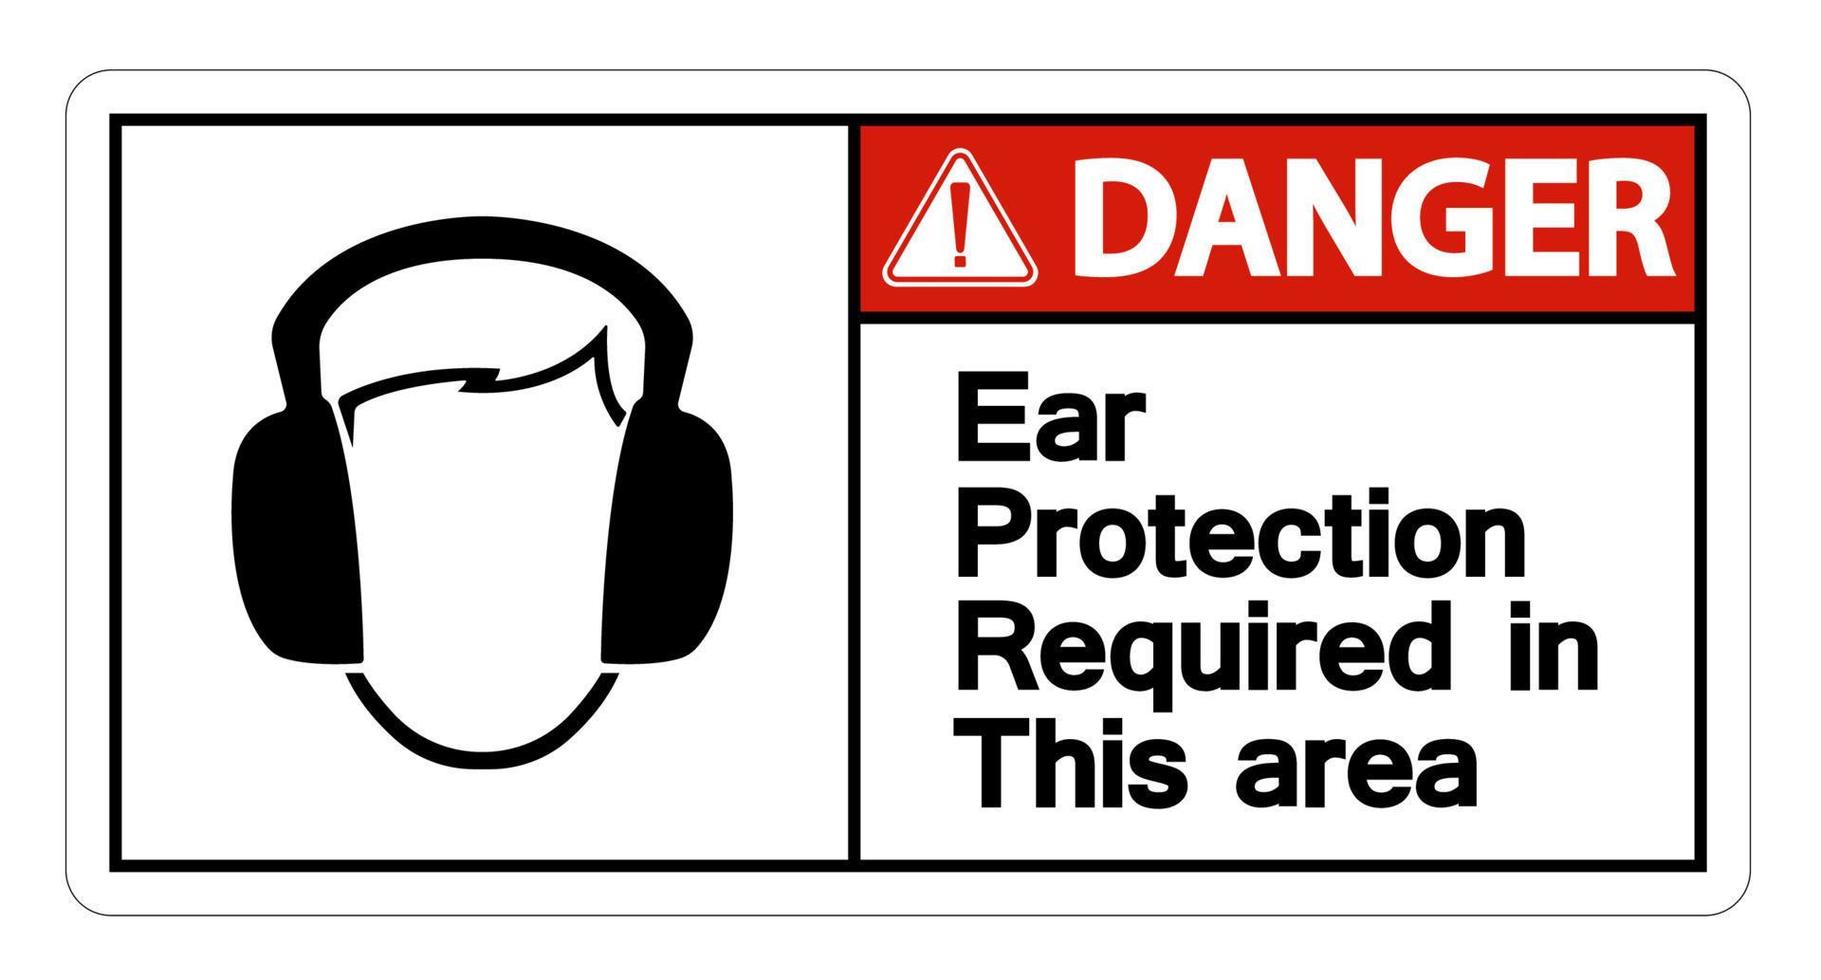 Protection auditive de danger requise dans cette zone symbole signe sur fond blanc, illustration vectorielle vecteur